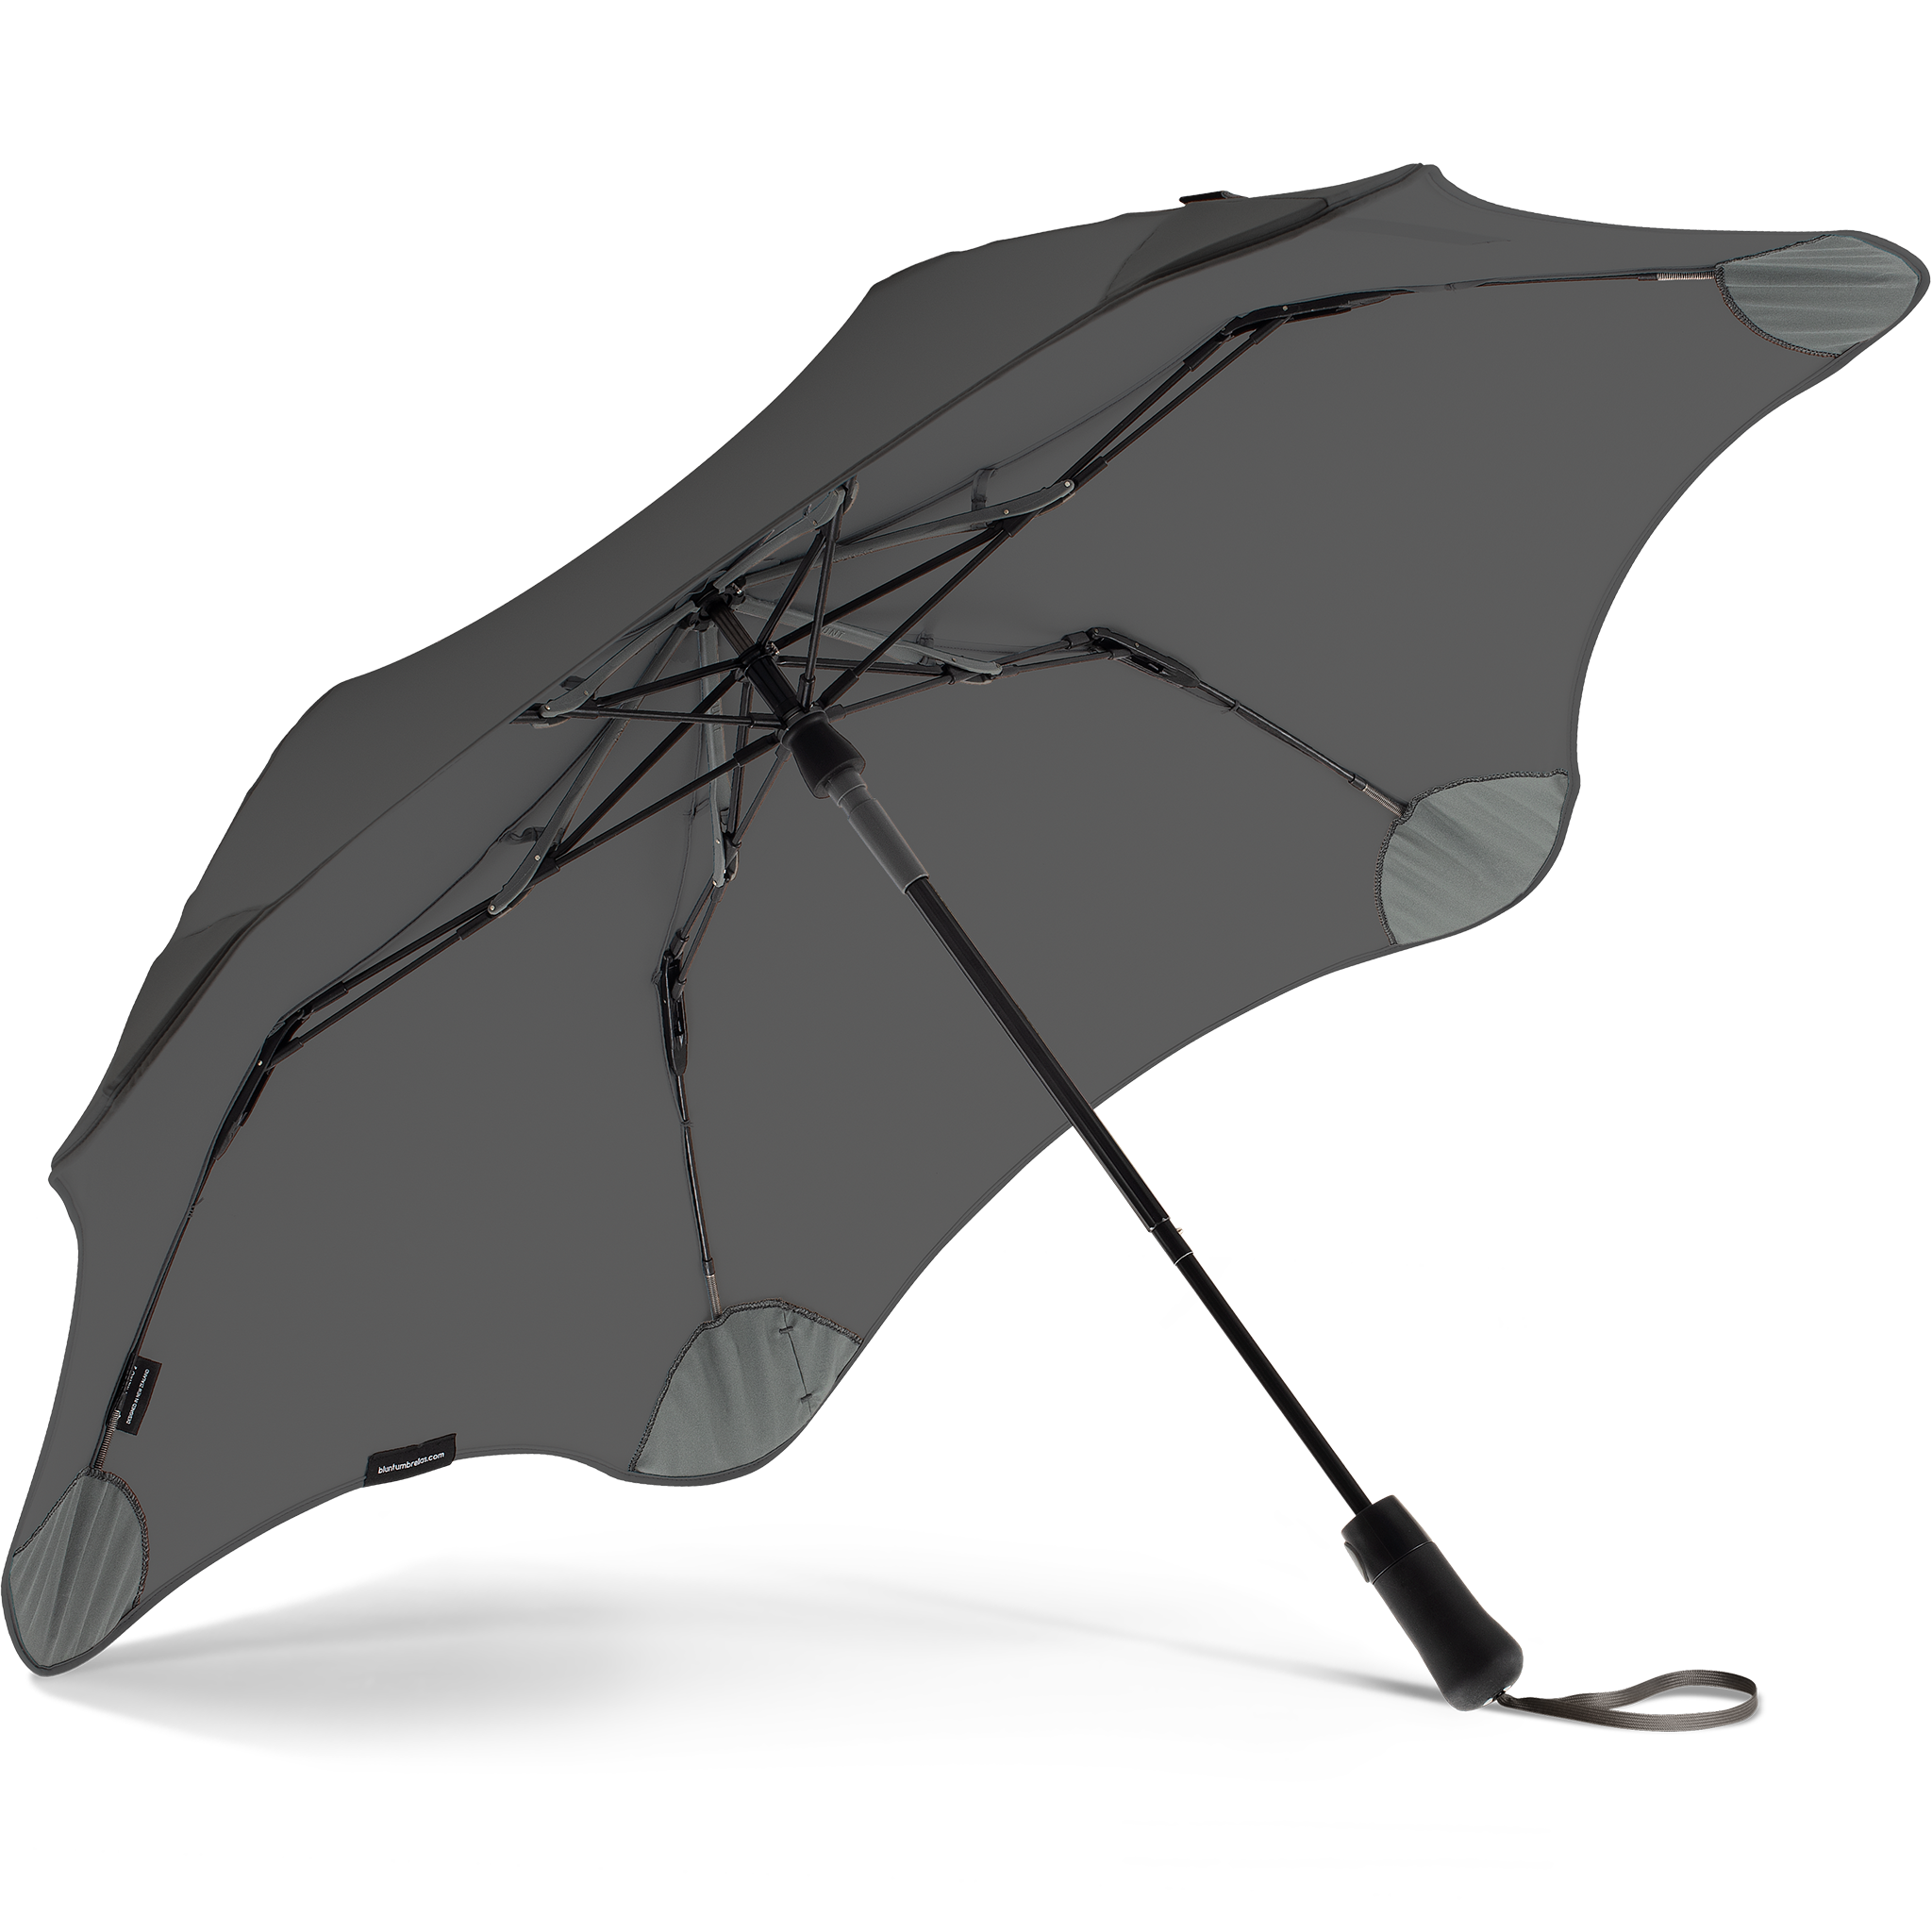 2020 Metro Charcoal Blunt Umbrella Under View